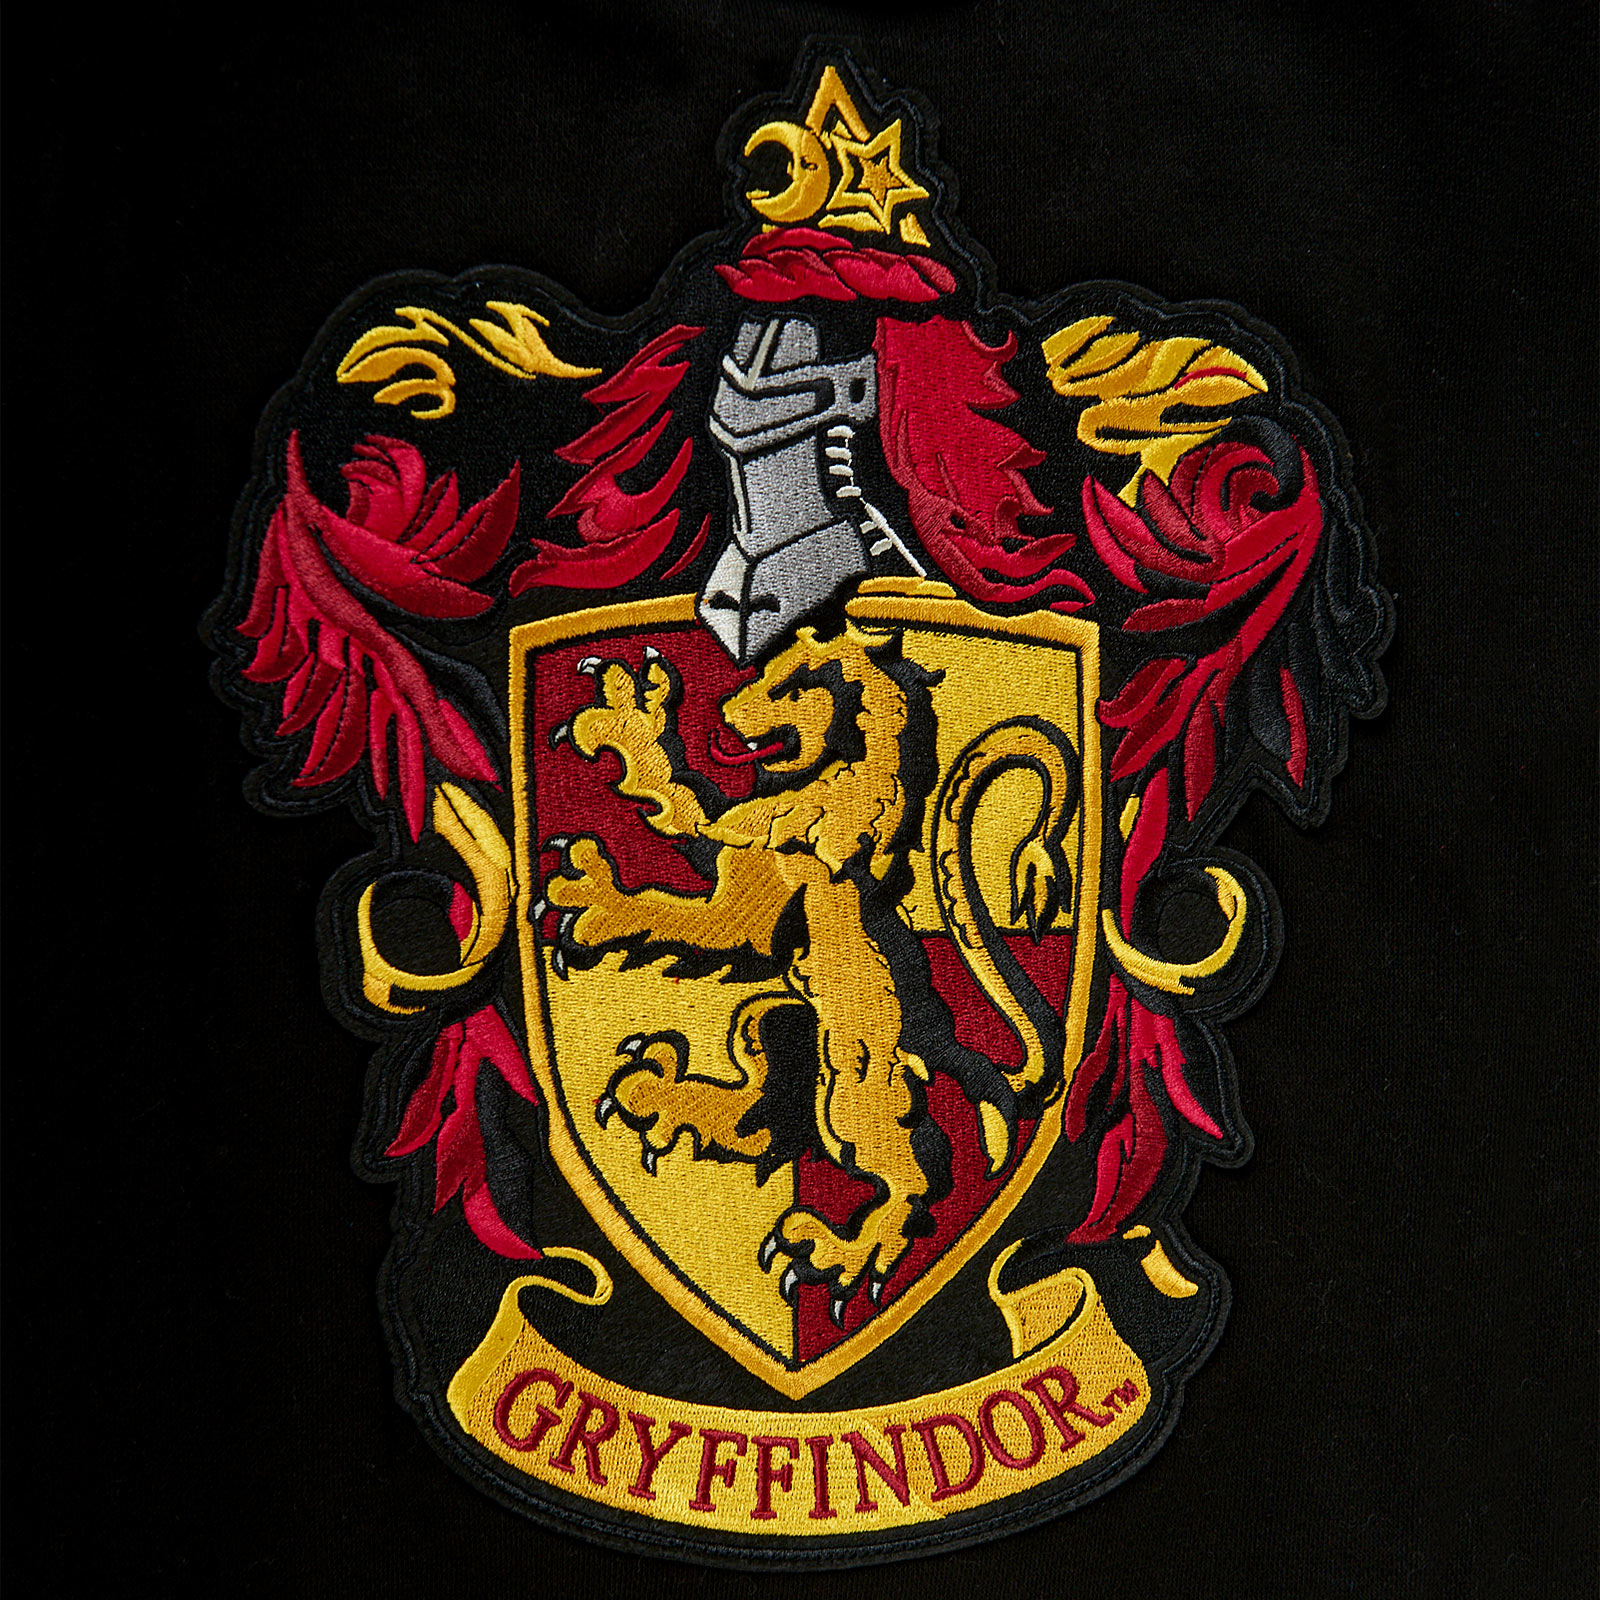 Harry Potter - Gryffindor Crest College Jacket